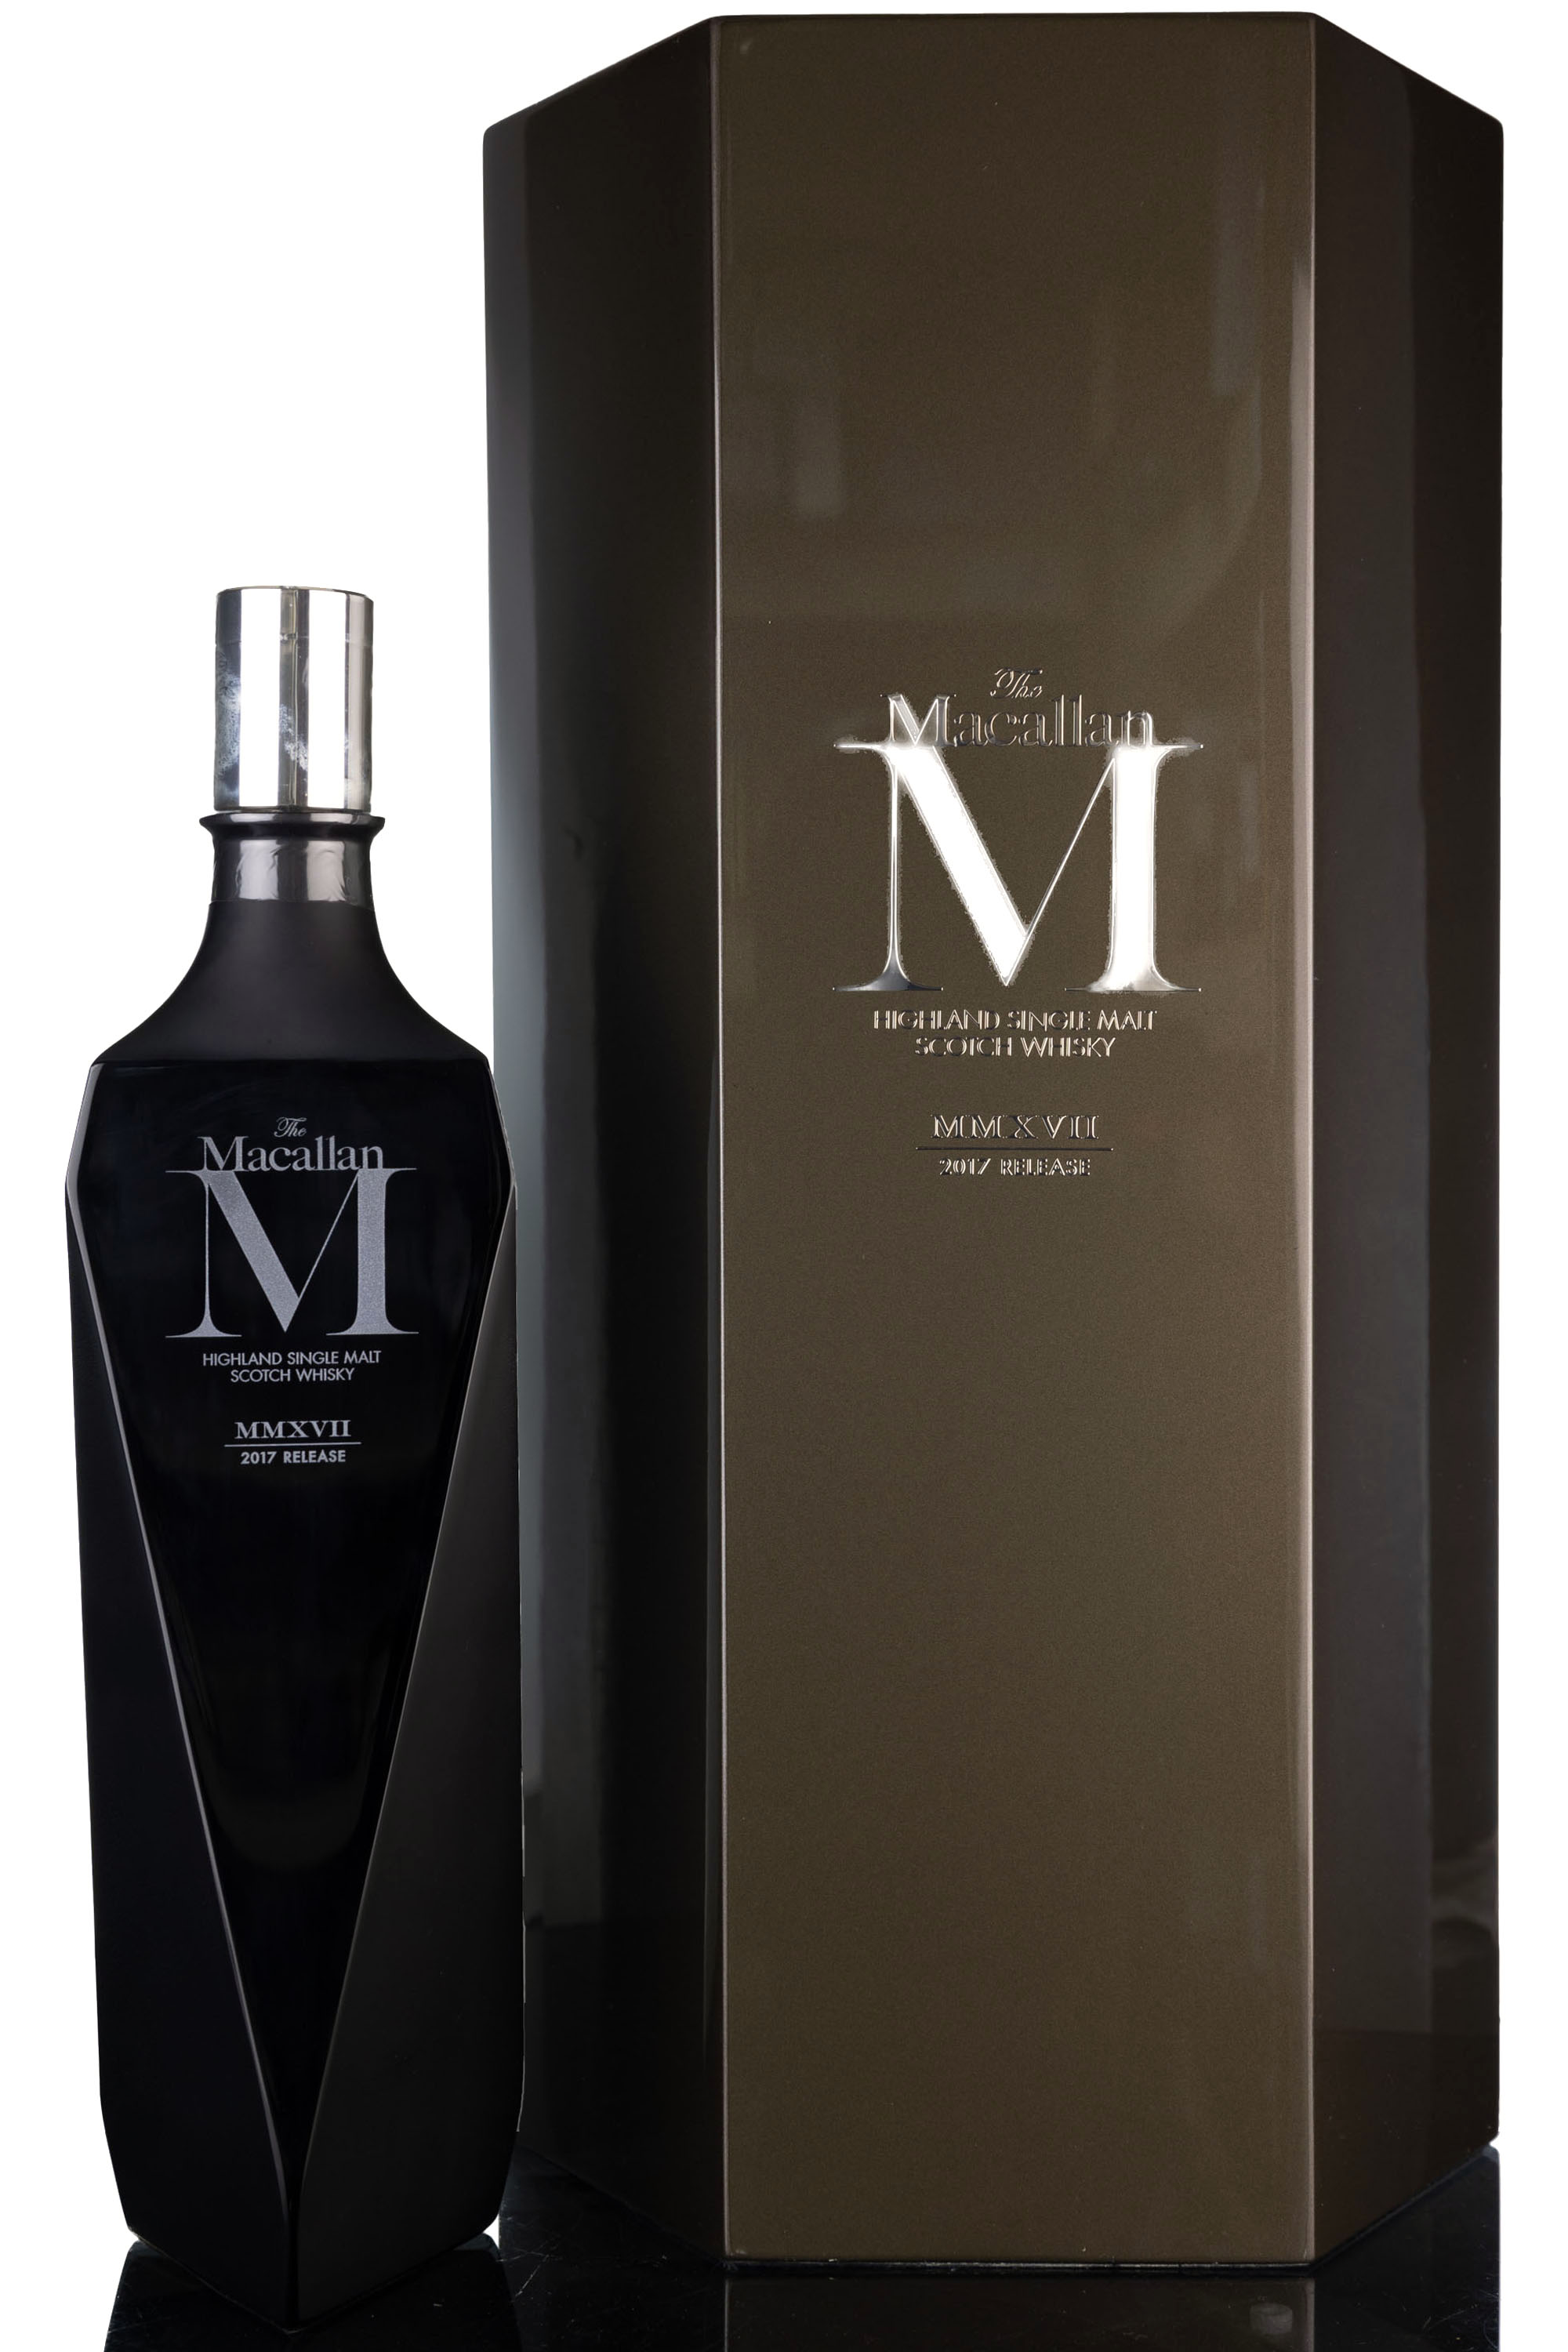 Macallan M Black Decanter - MMXVII - 2017 Release